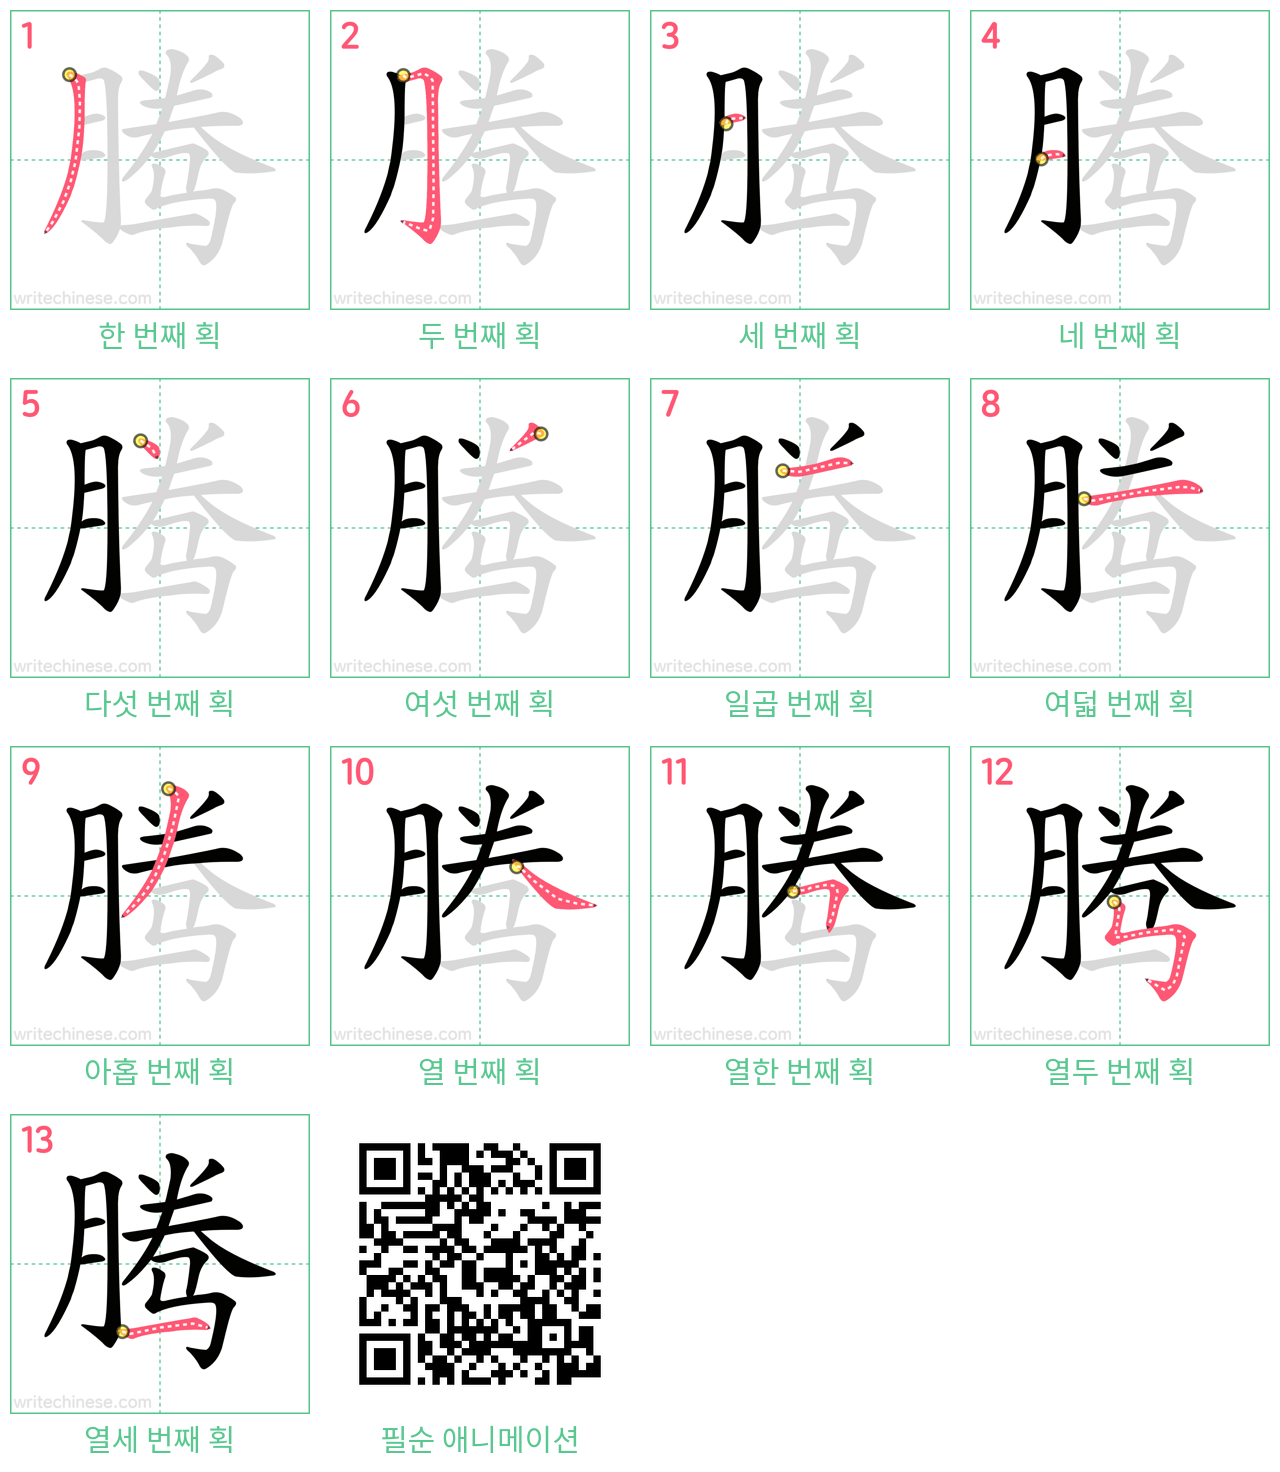 腾 step-by-step stroke order diagrams